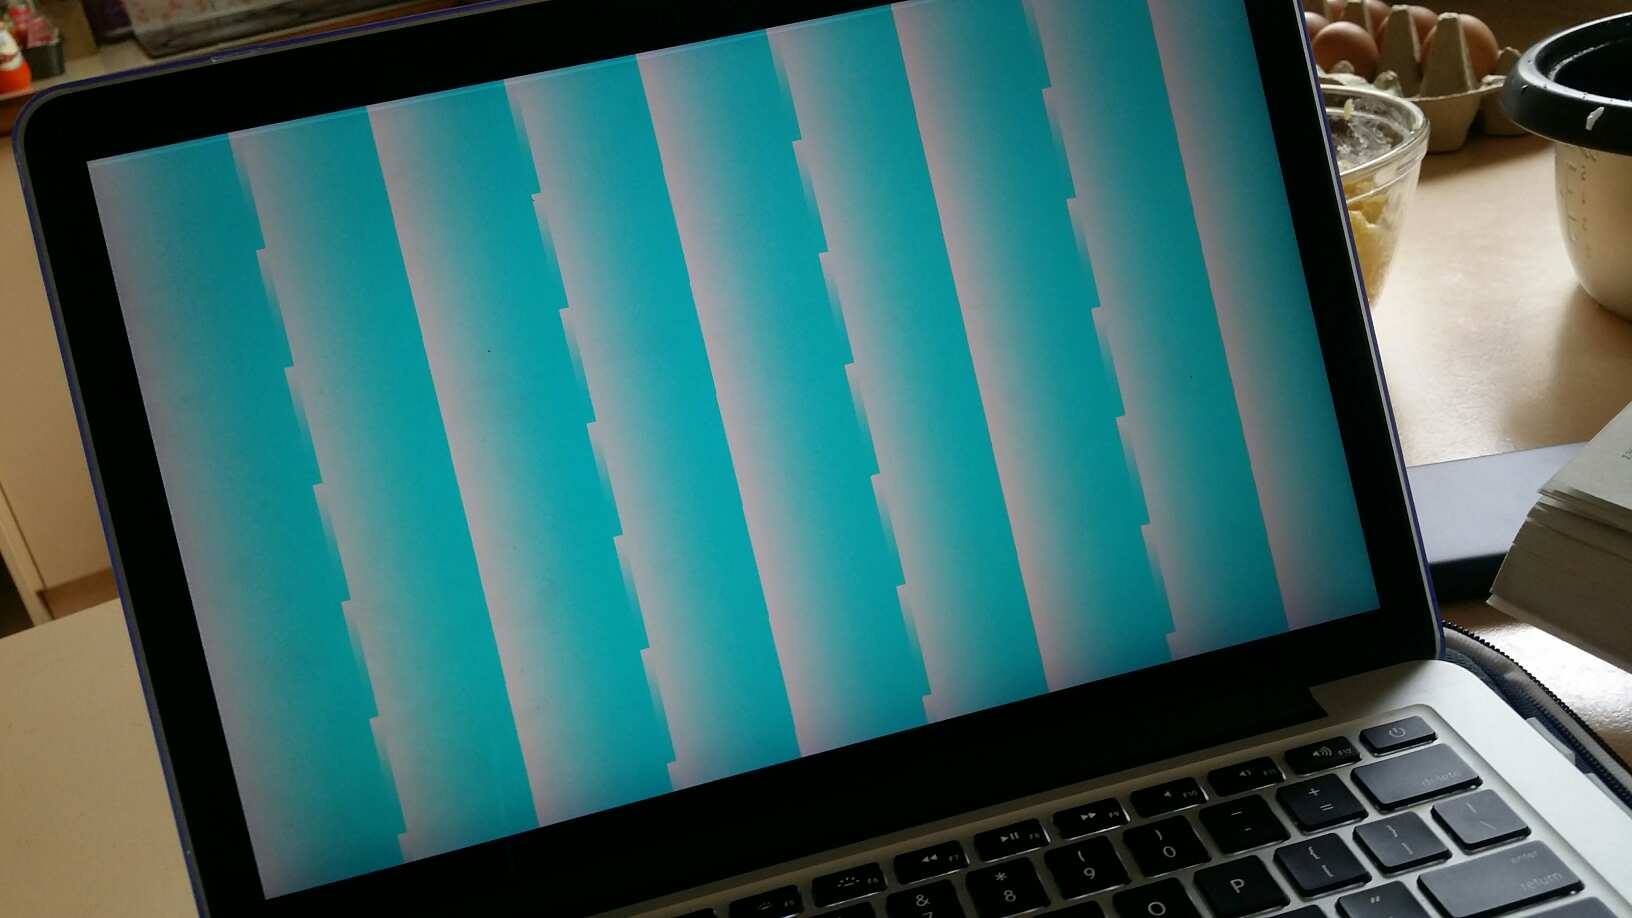 macbook pro retina display flickering a little bit